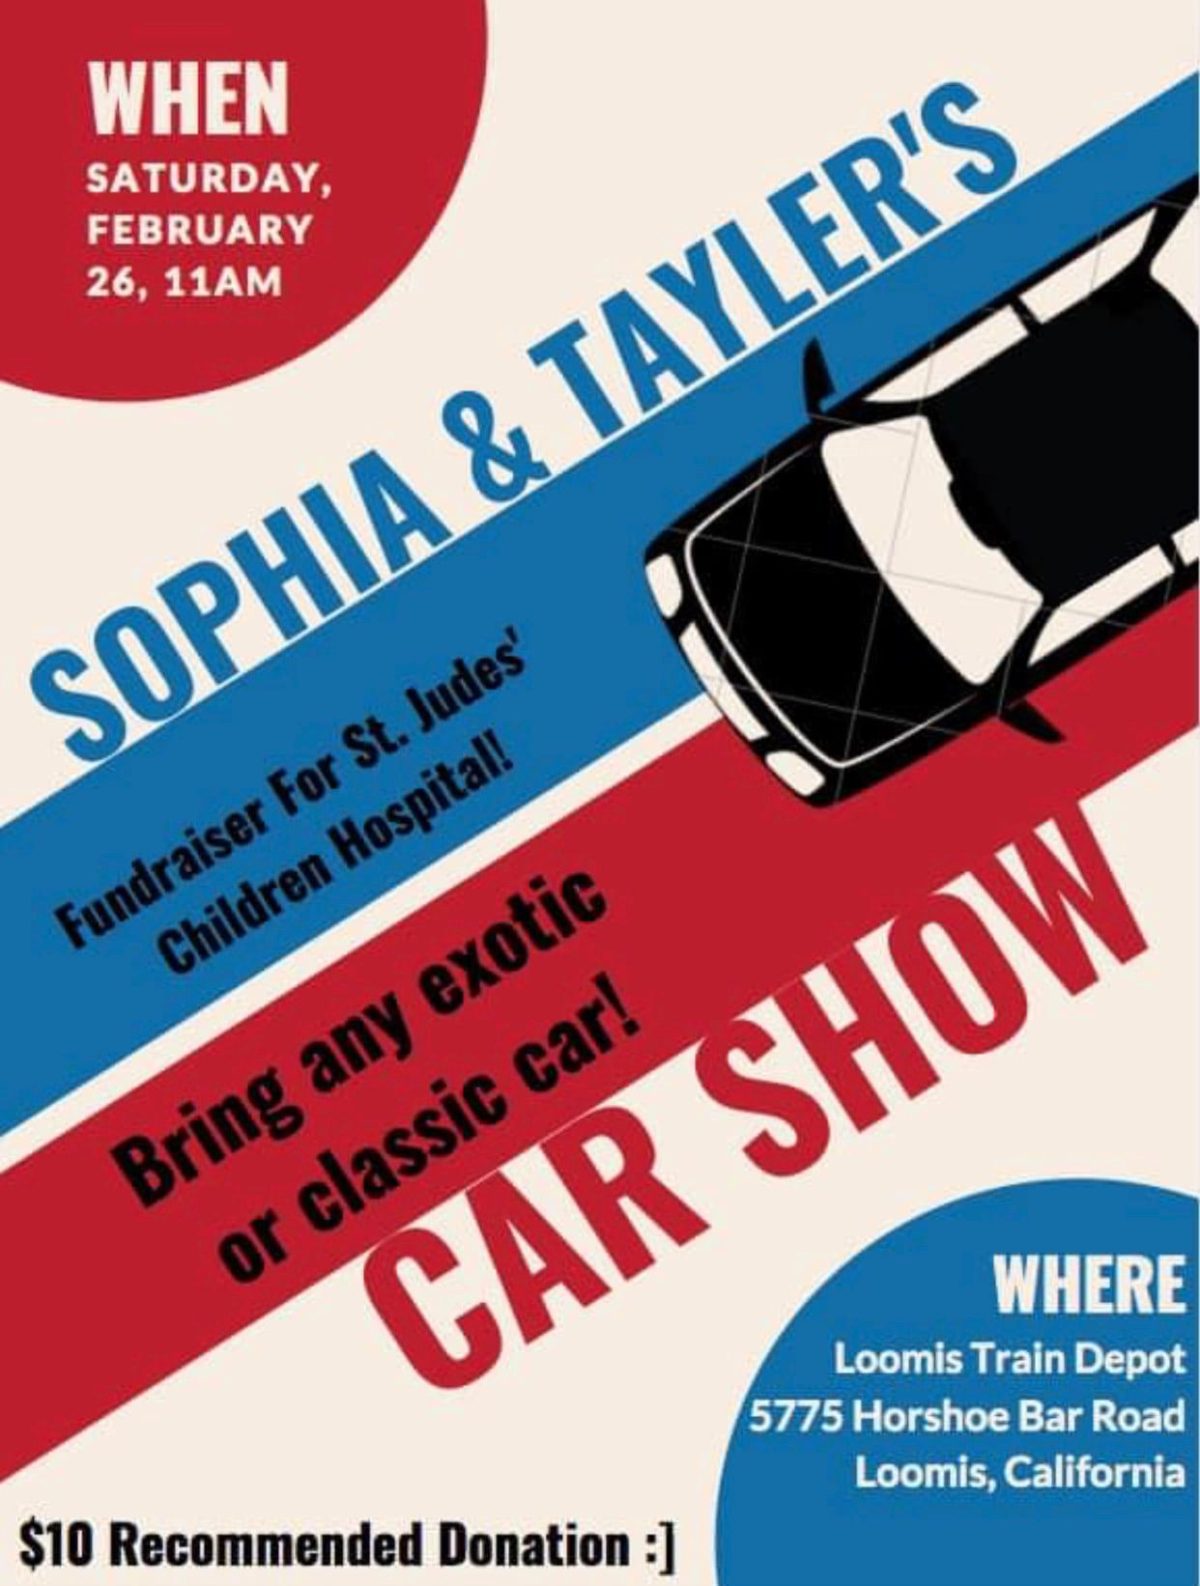 Sophia & Tayler’s Car Show